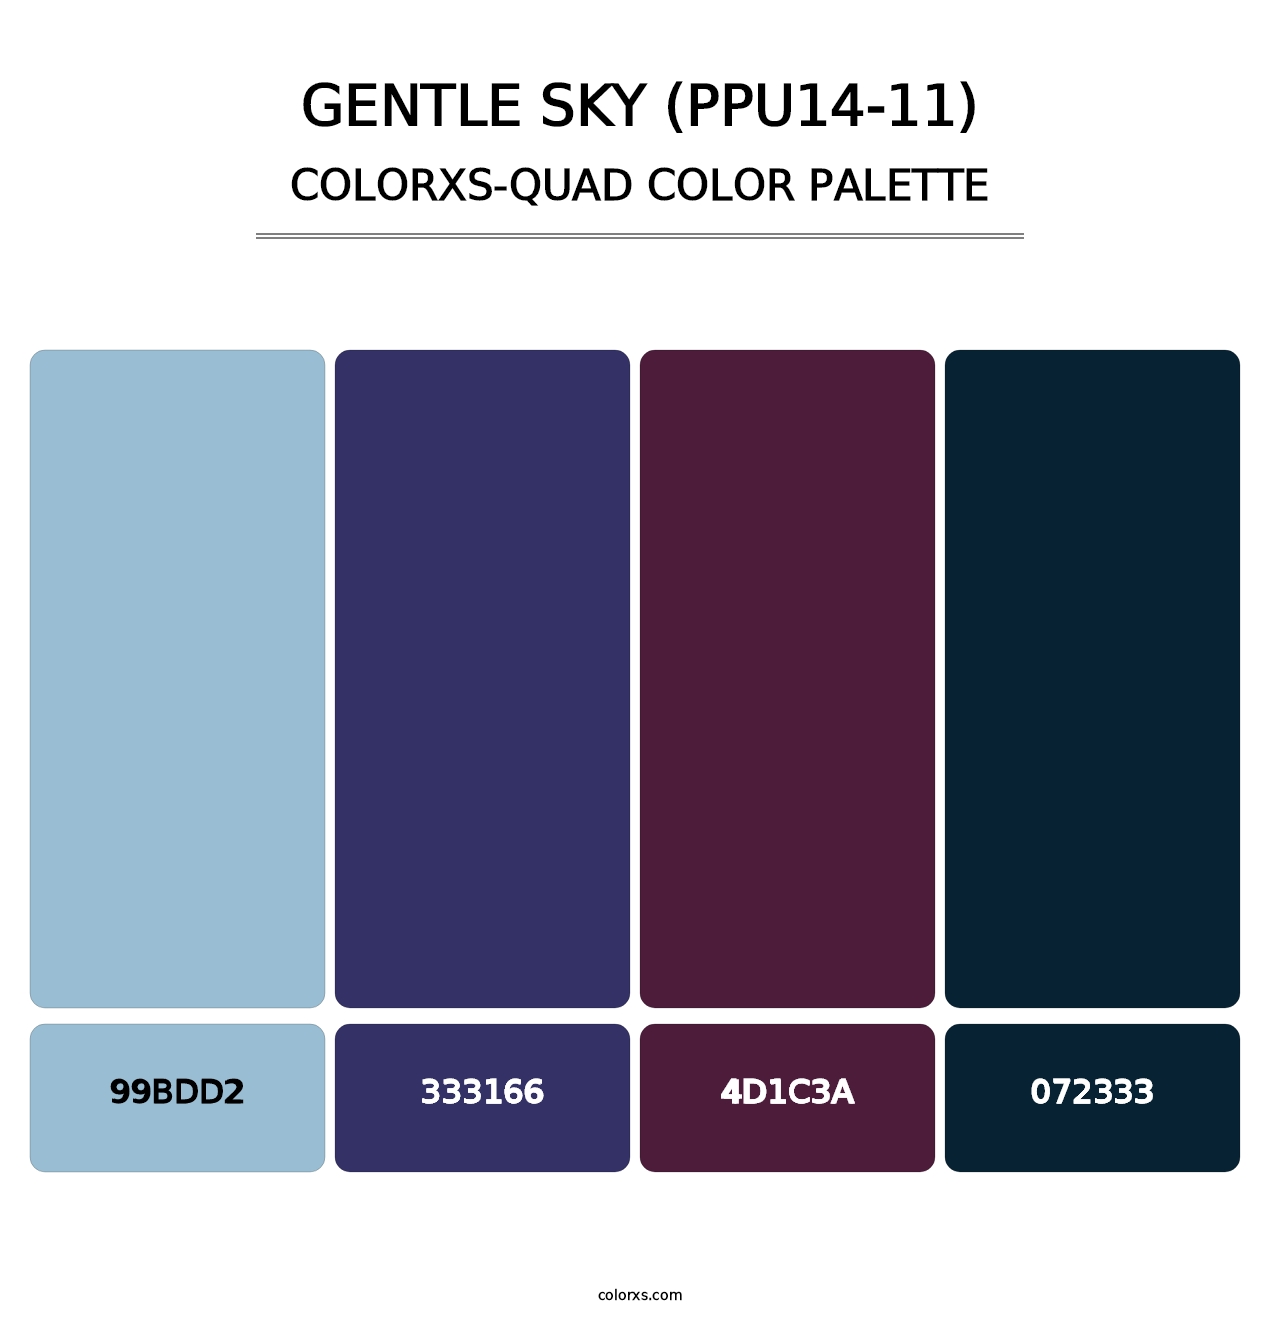 Gentle Sky (PPU14-11) - Colorxs Quad Palette